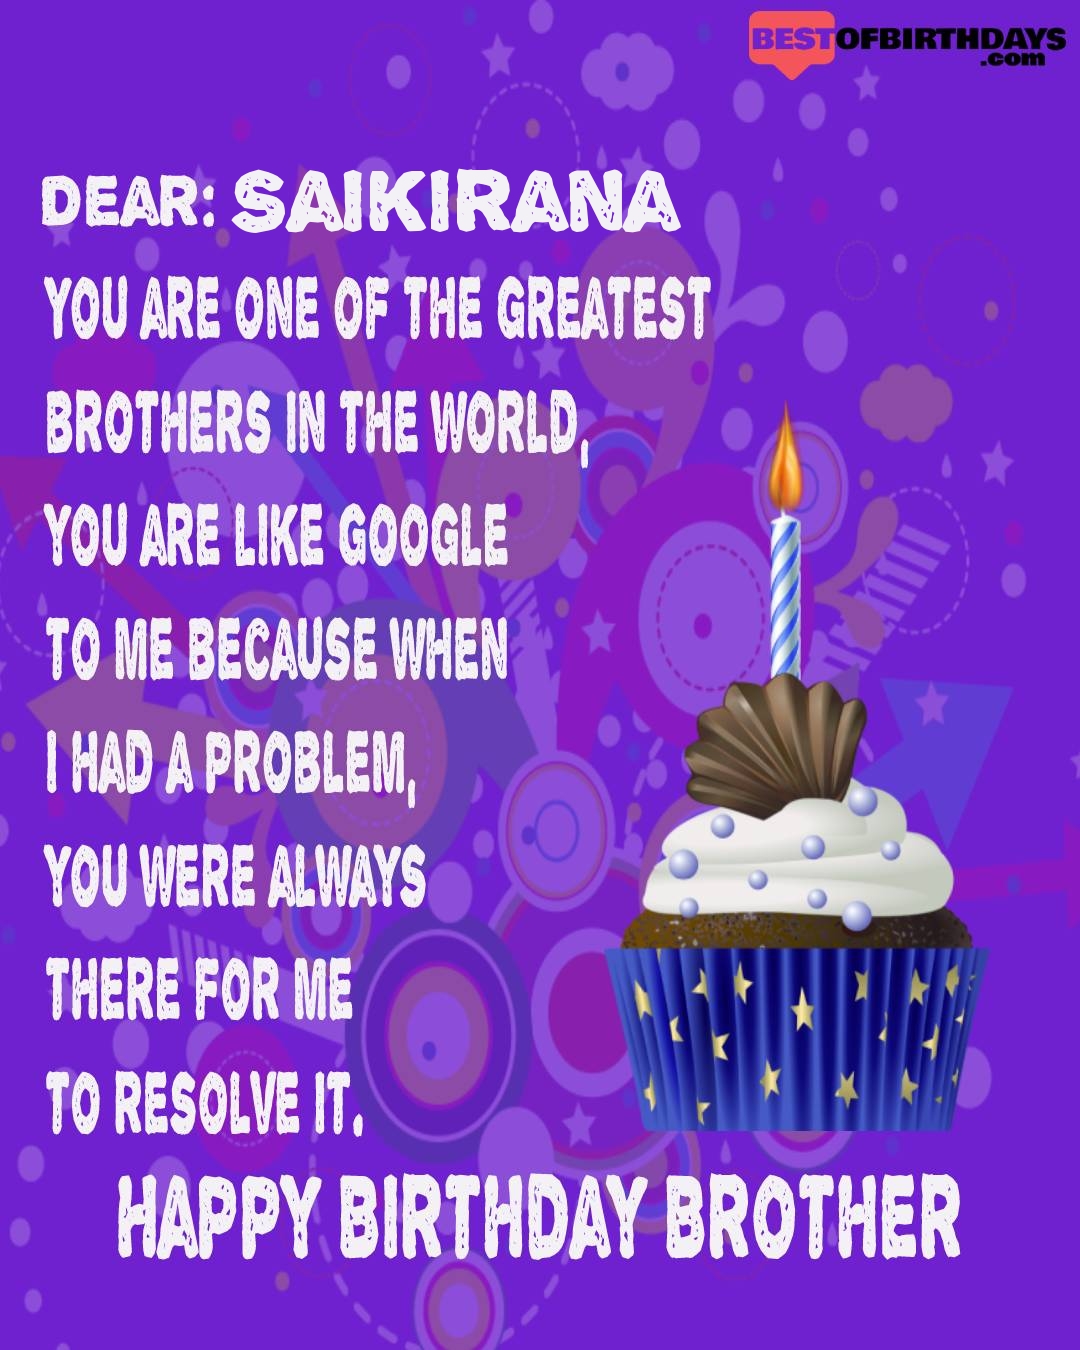 Happy birthday saikirana bhai brother bro